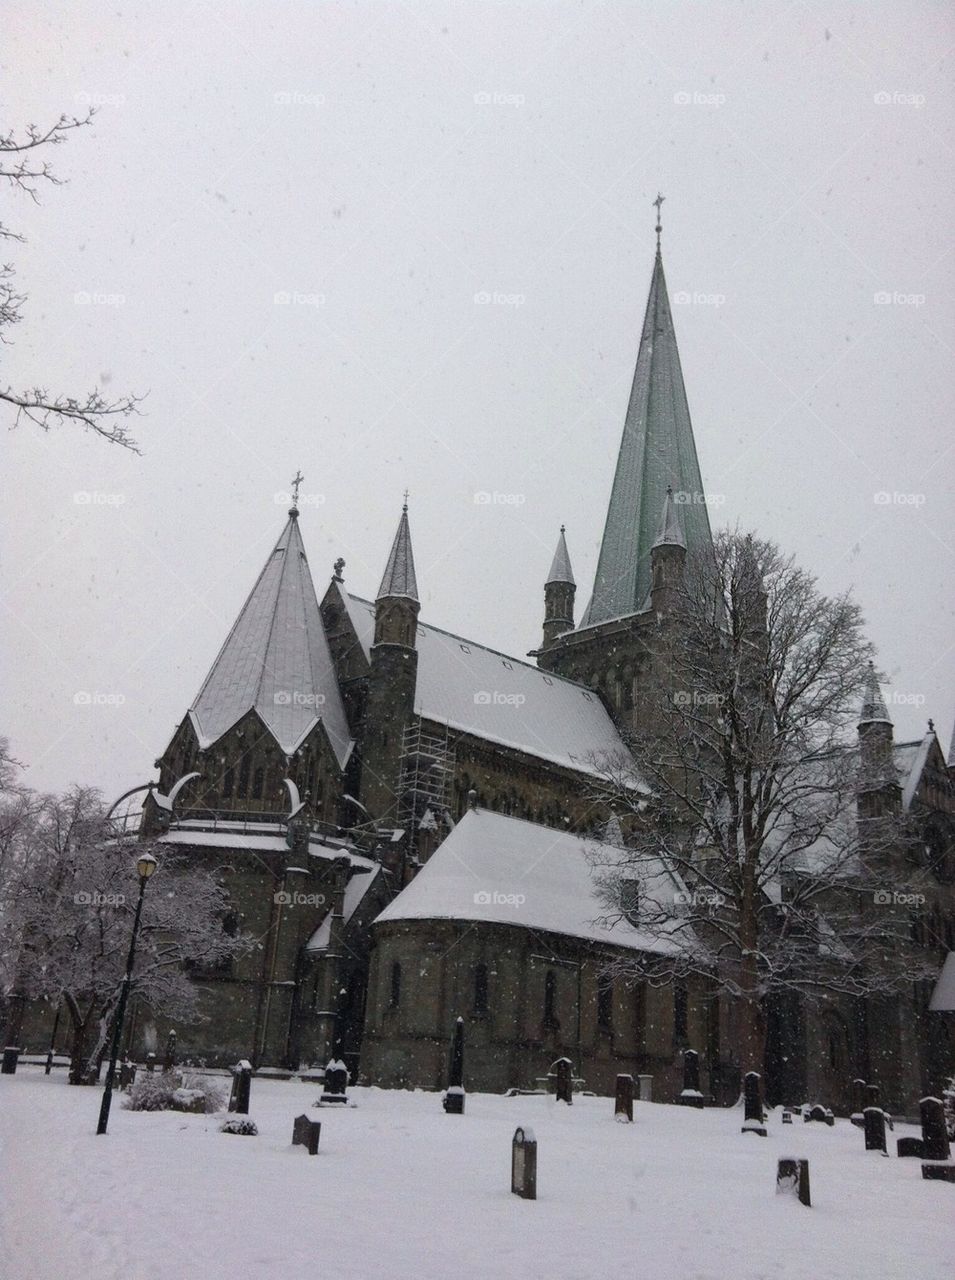 Nidarosdomen in the snow